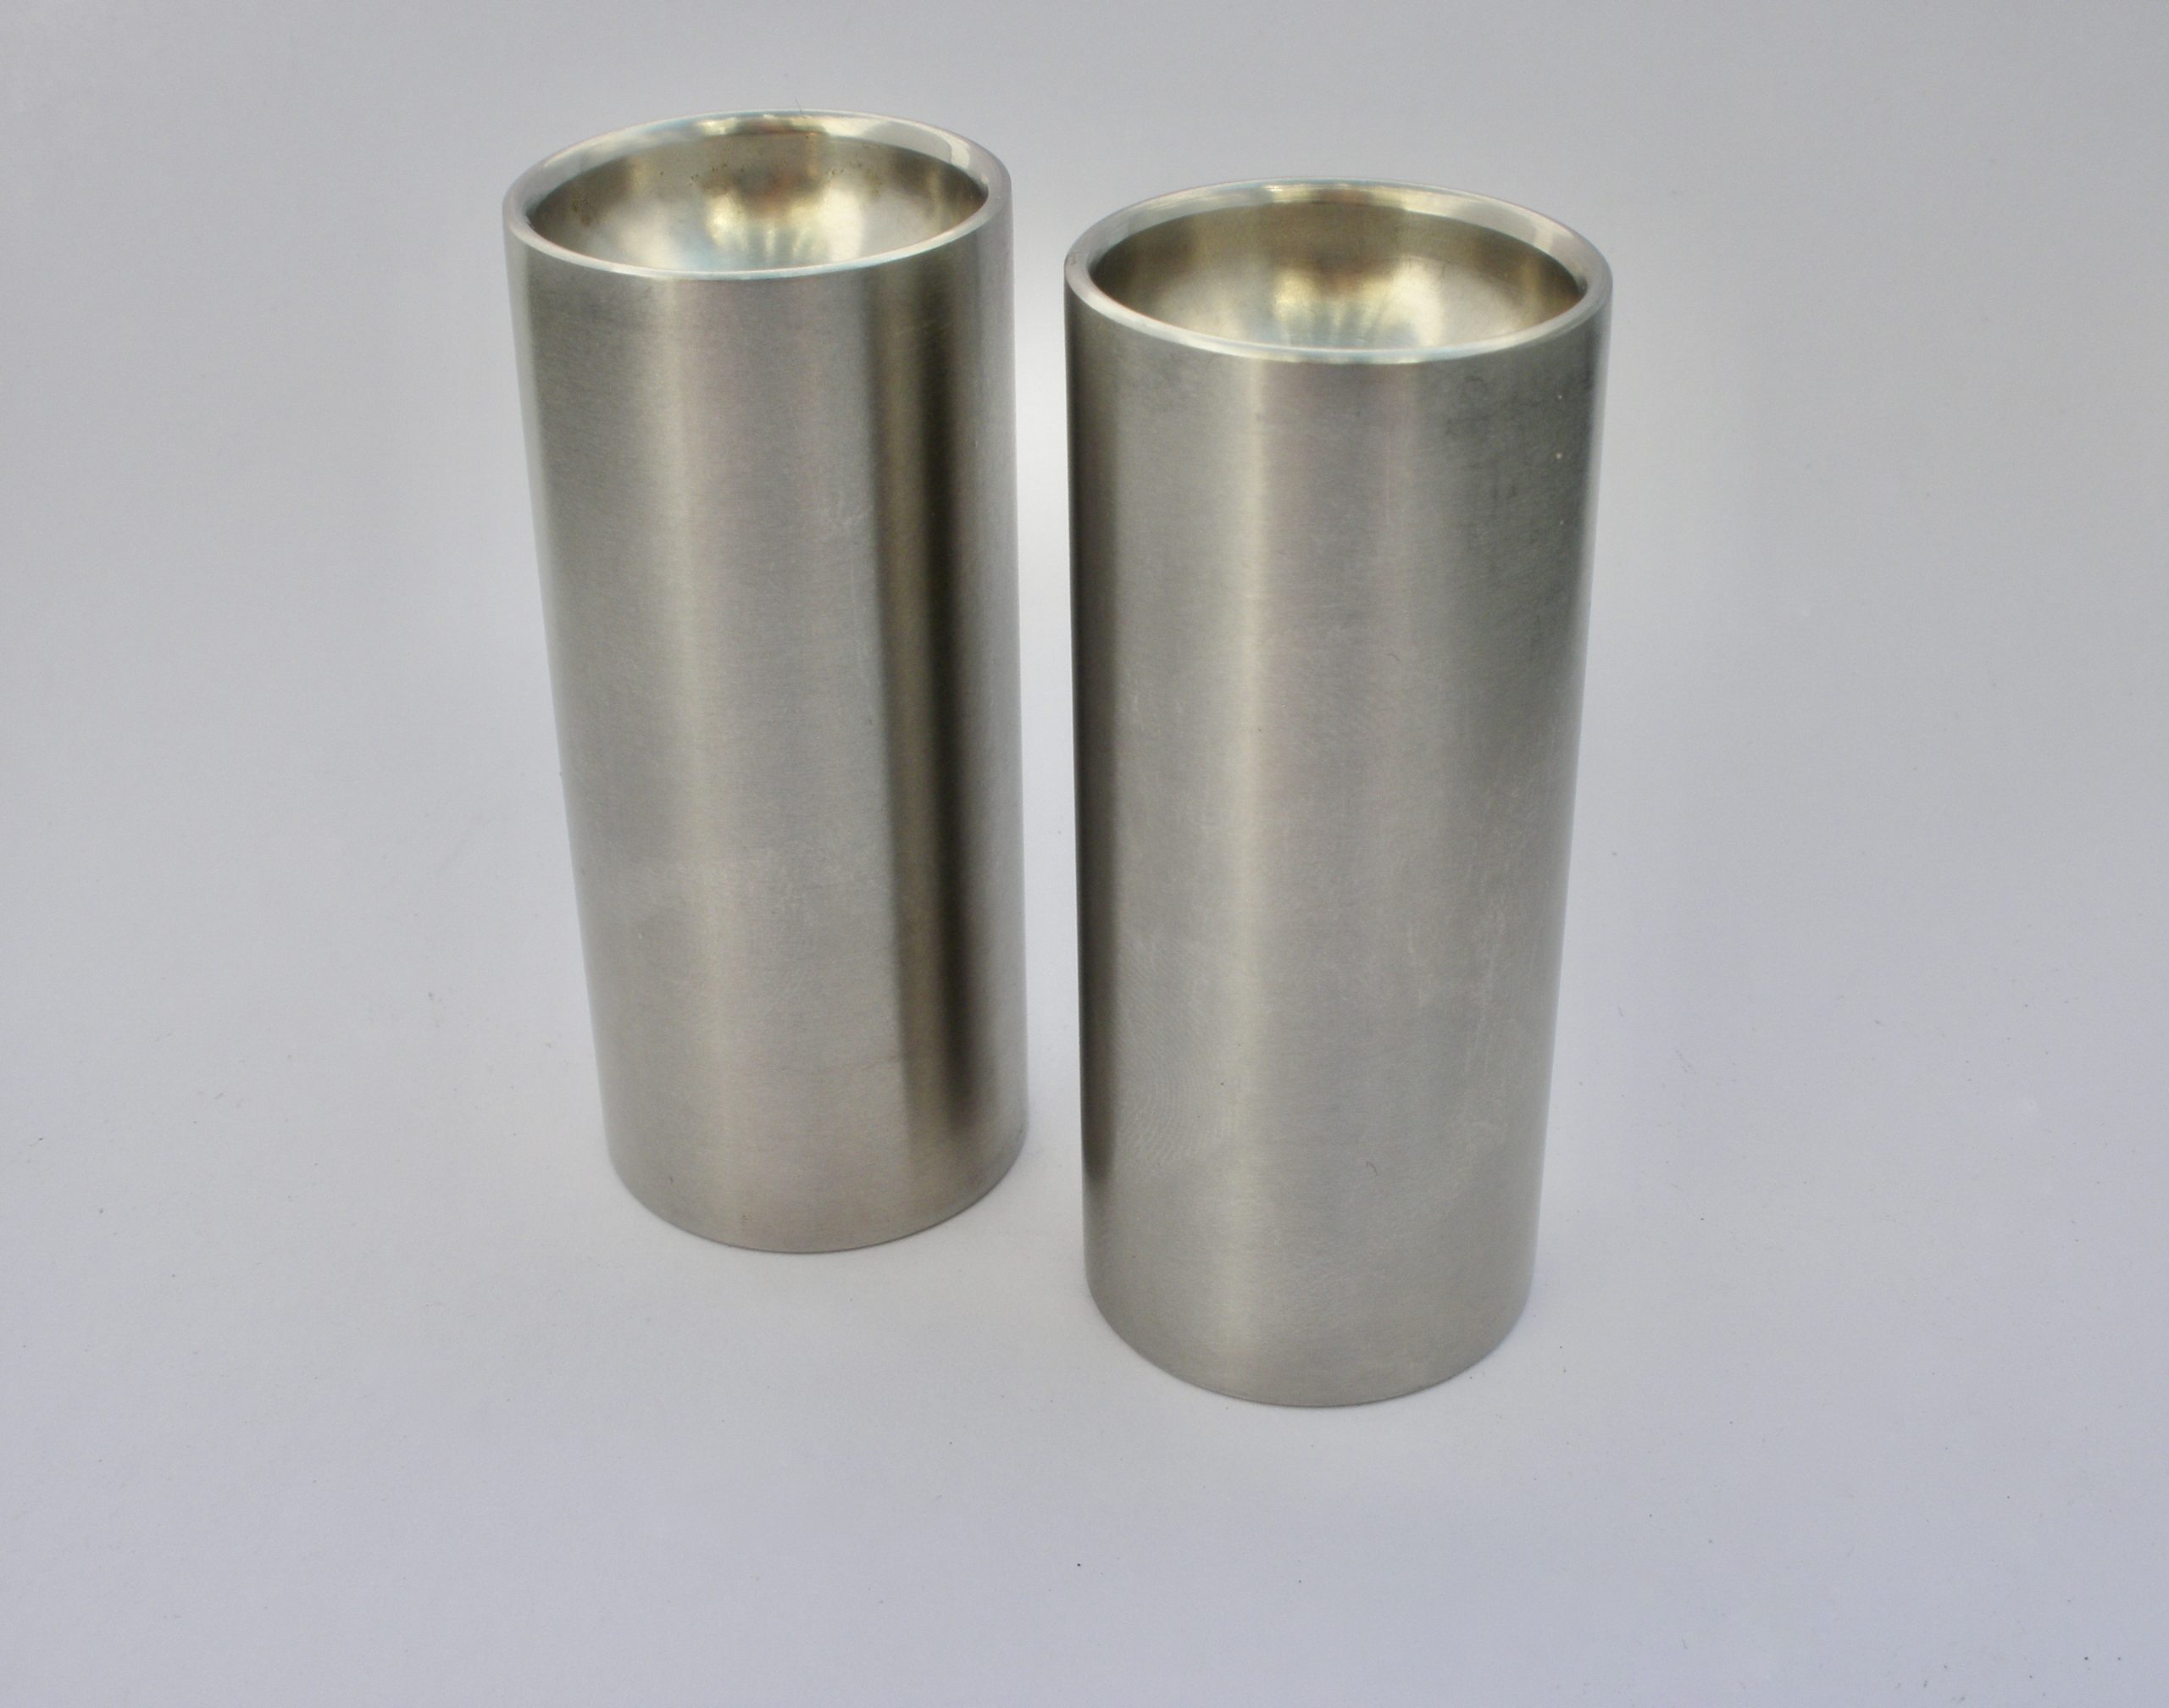 Arne Jacobsen for Stelton, pair of stainless steel Cylinda-Line salt and pepper shakers, Denmark (Ref S487)